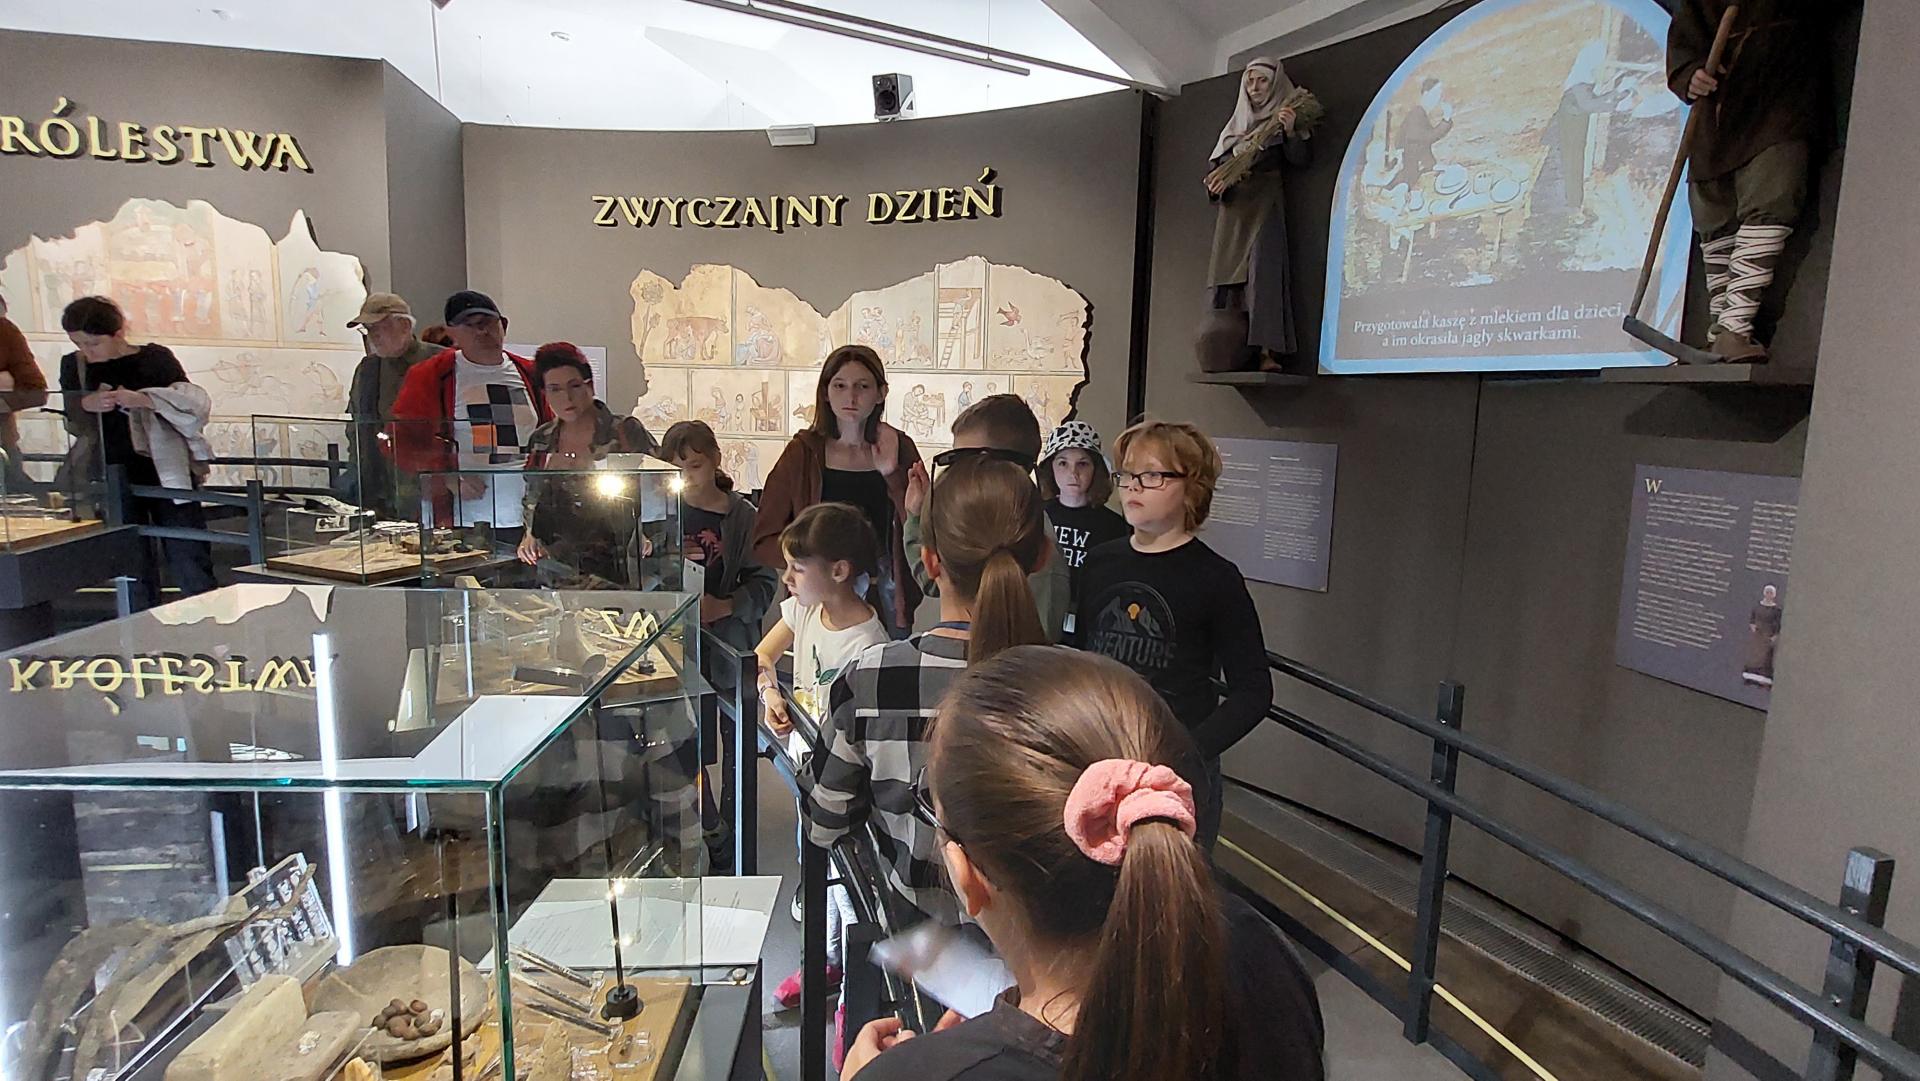 dzieci ogladaja ekspozycje muzealną z gablotami